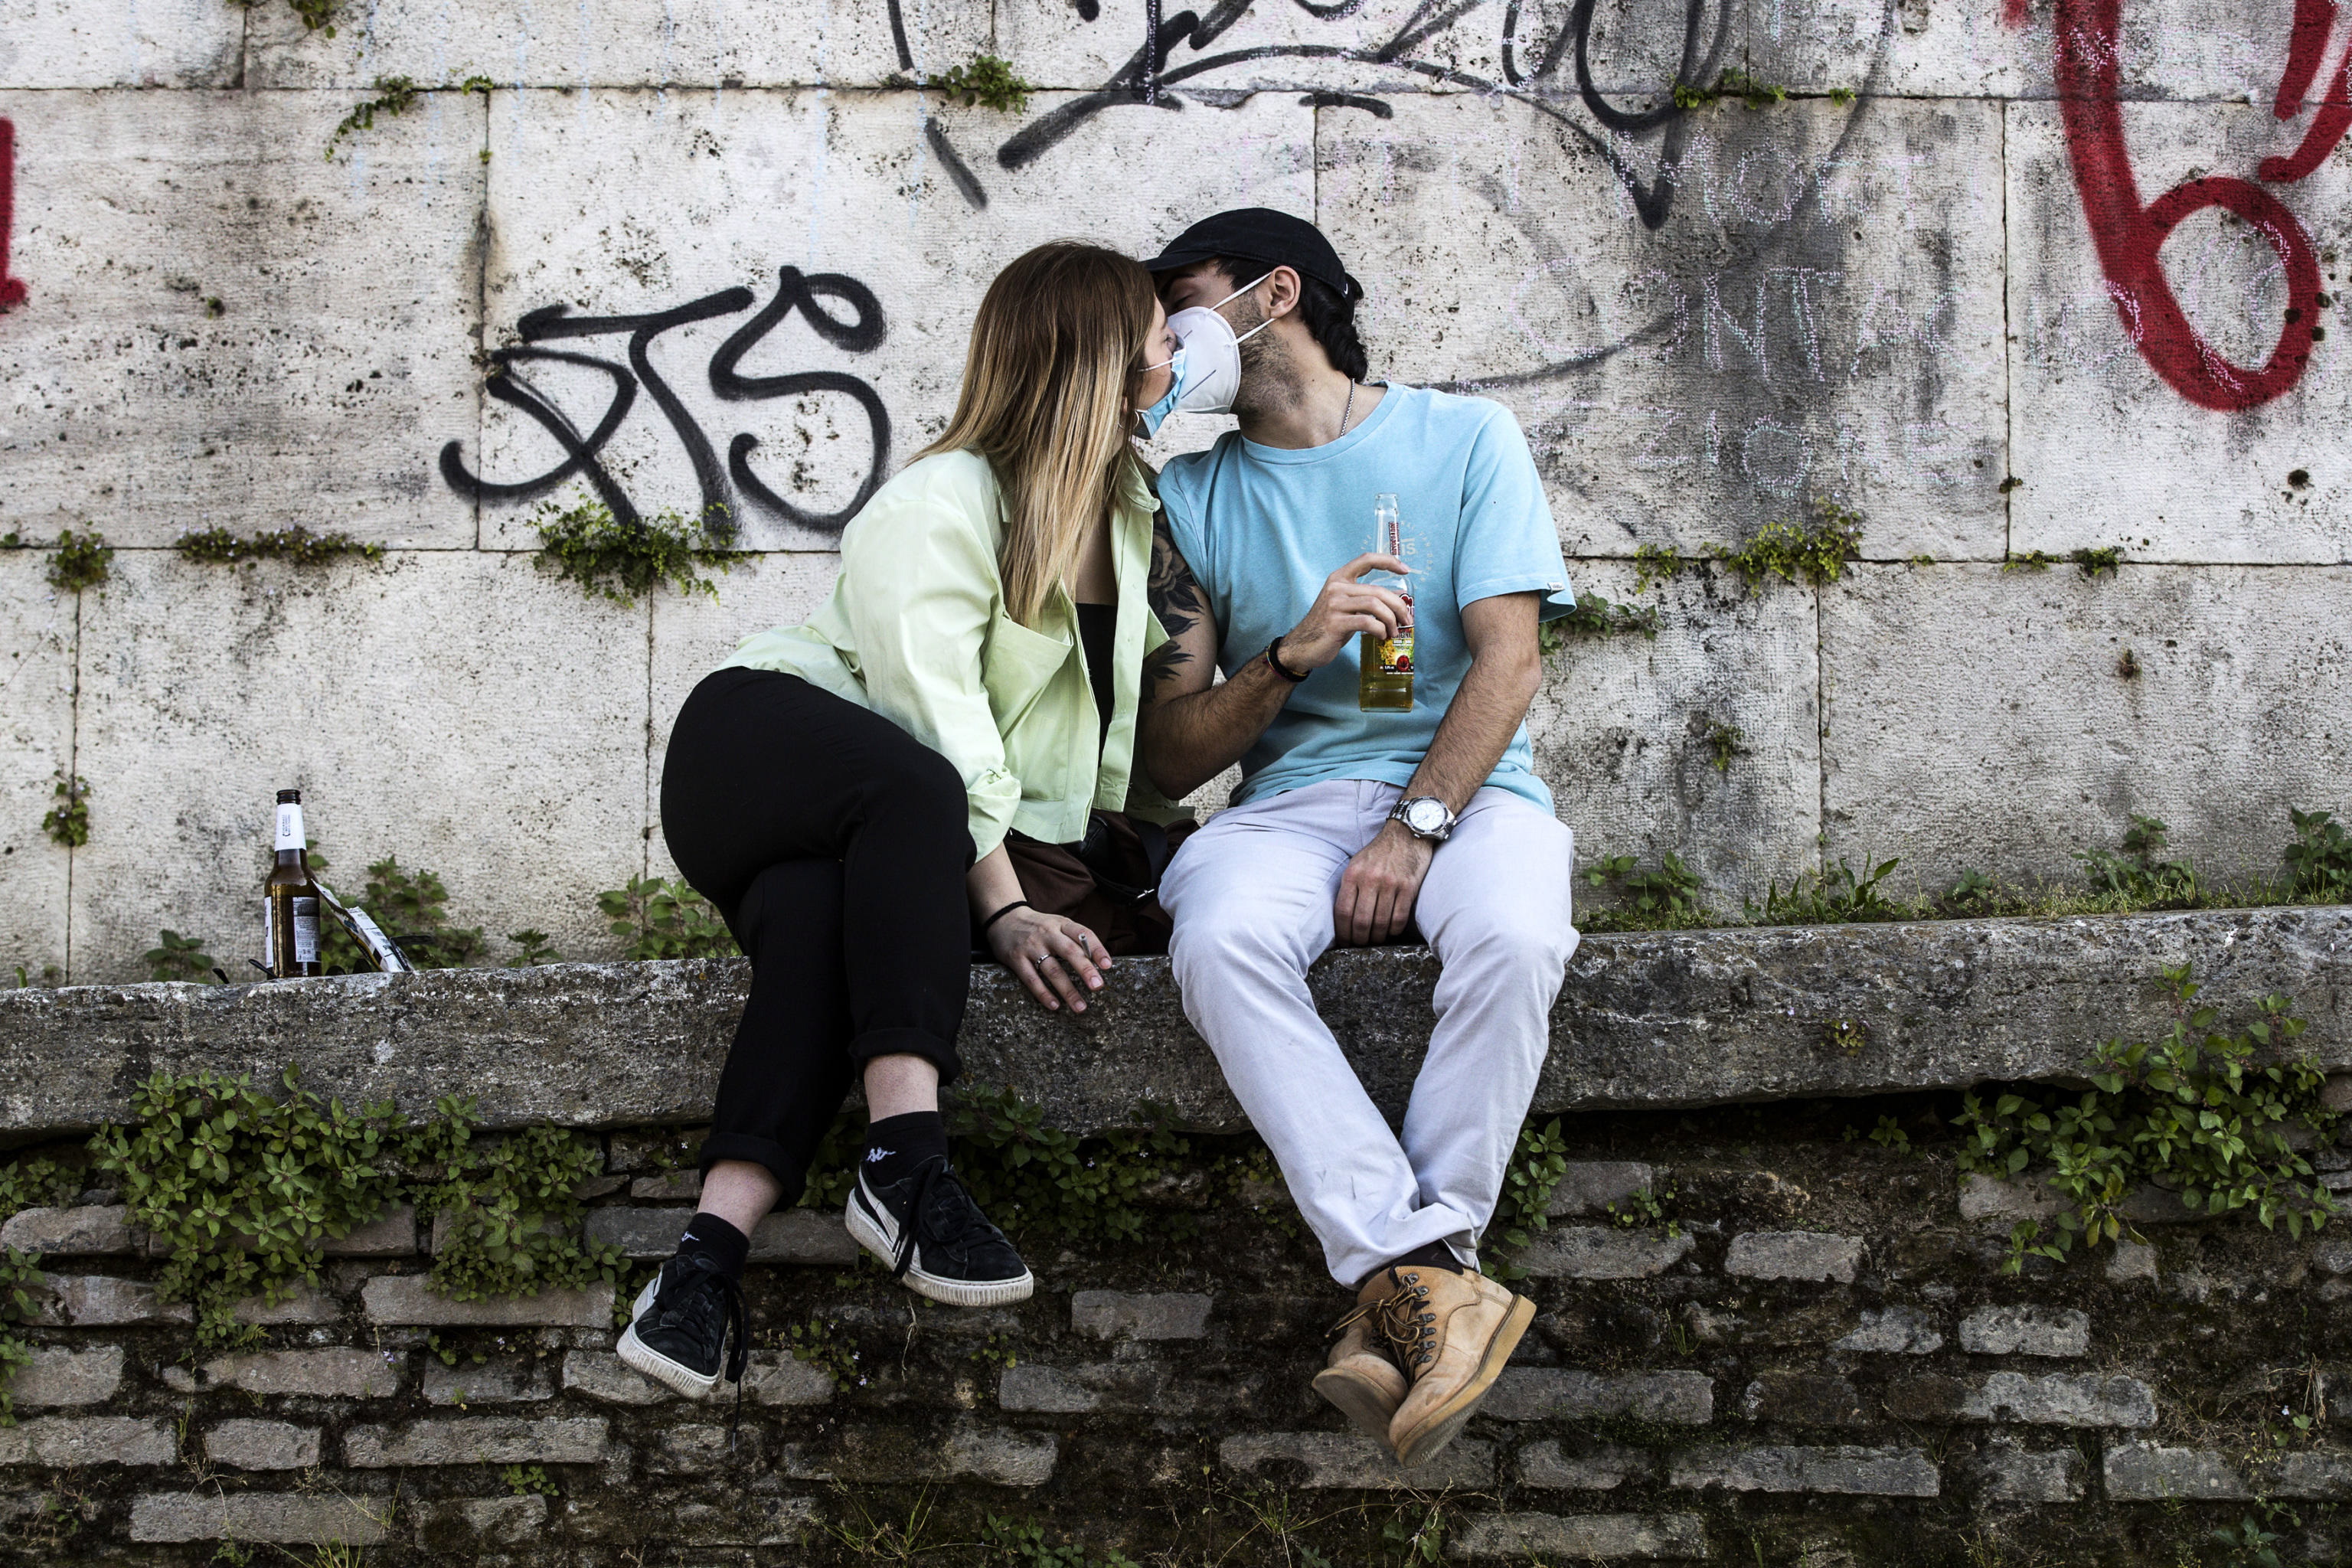 5月6日,在意大利罗马,一对情侣戴着口罩亲吻